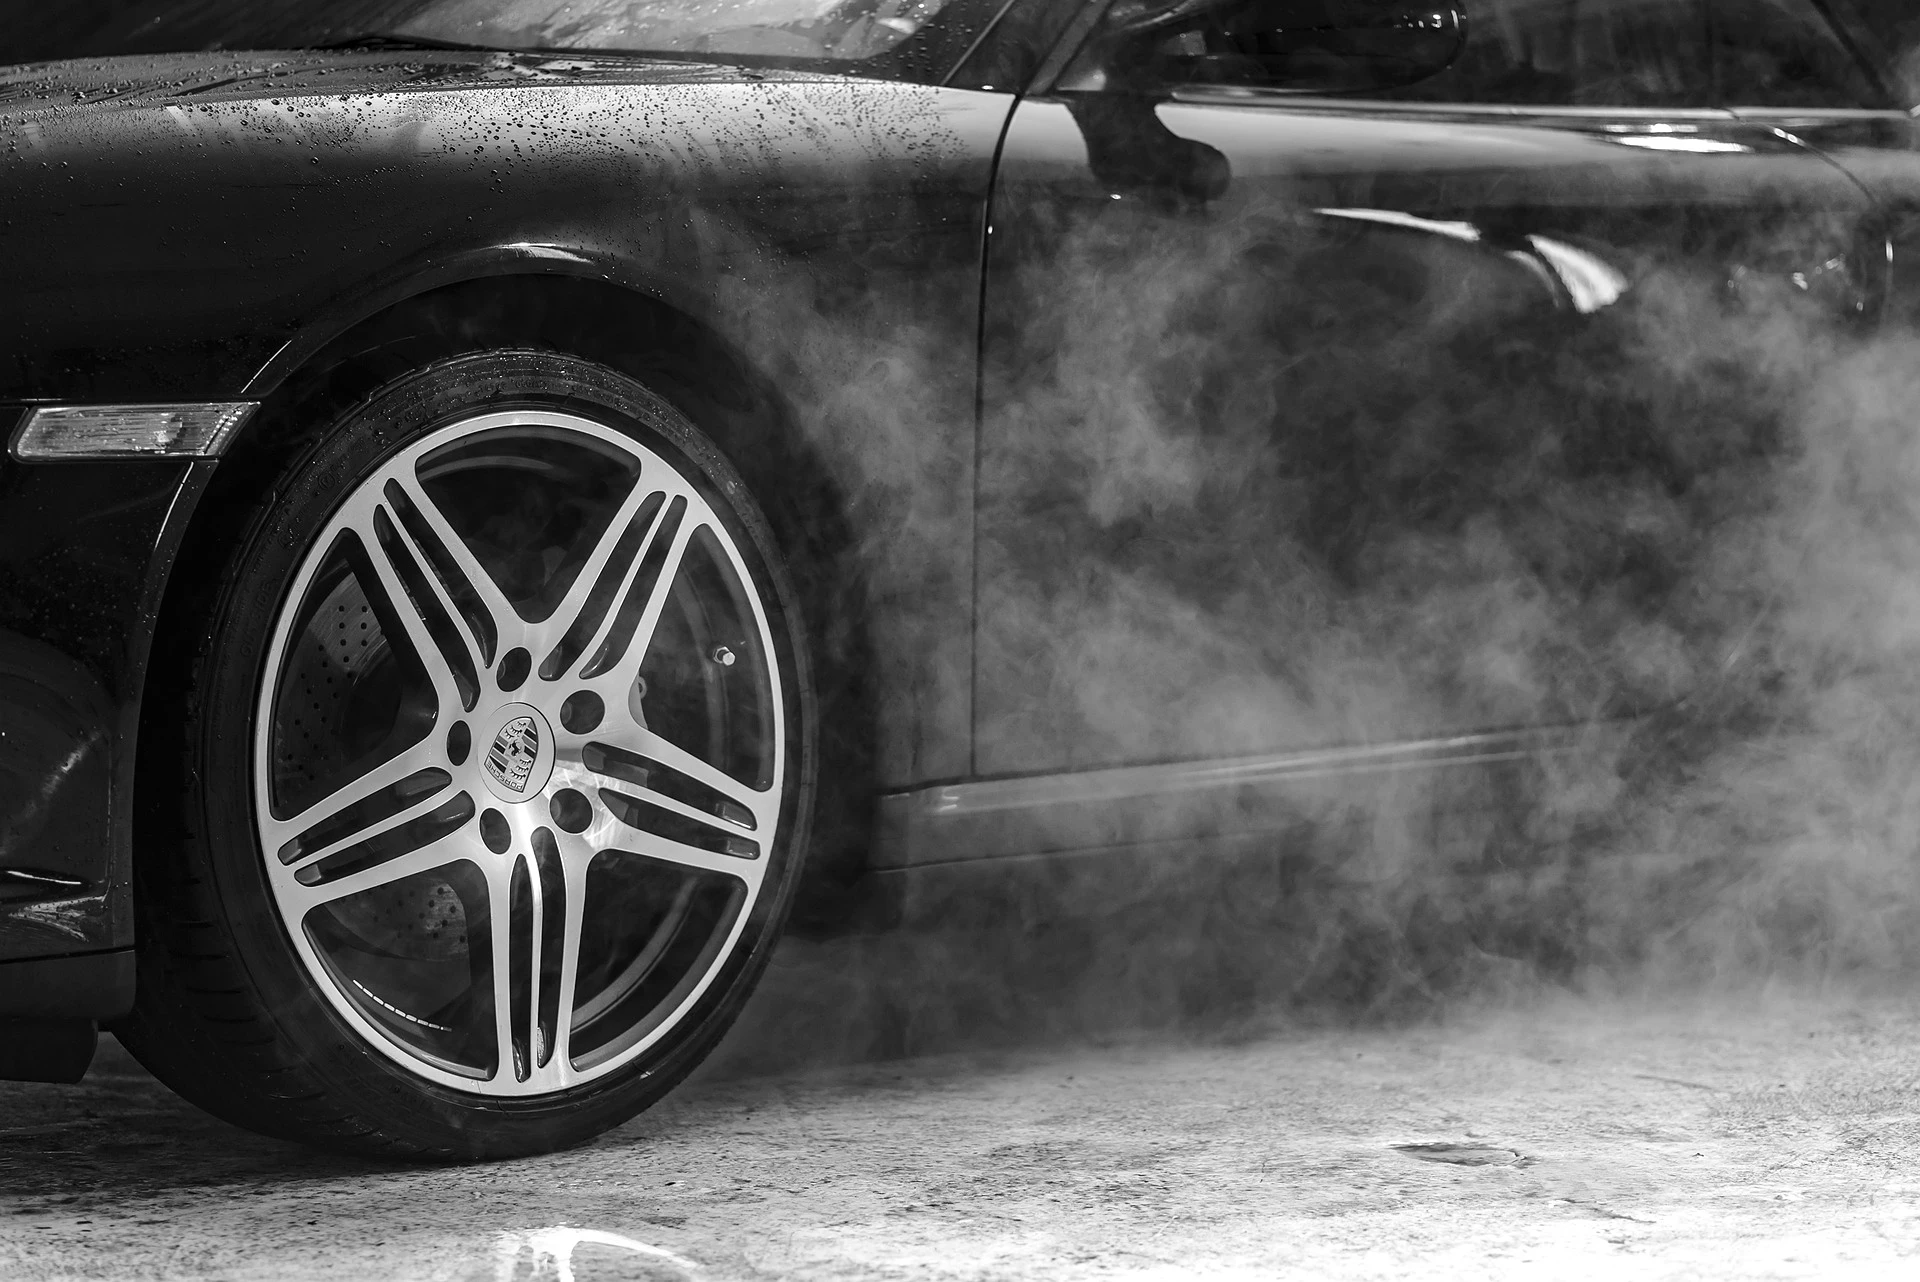 Siūloma  uždrausti eksploatuoti automobilius, jei vizualiai matomi nebūdingi dūmai